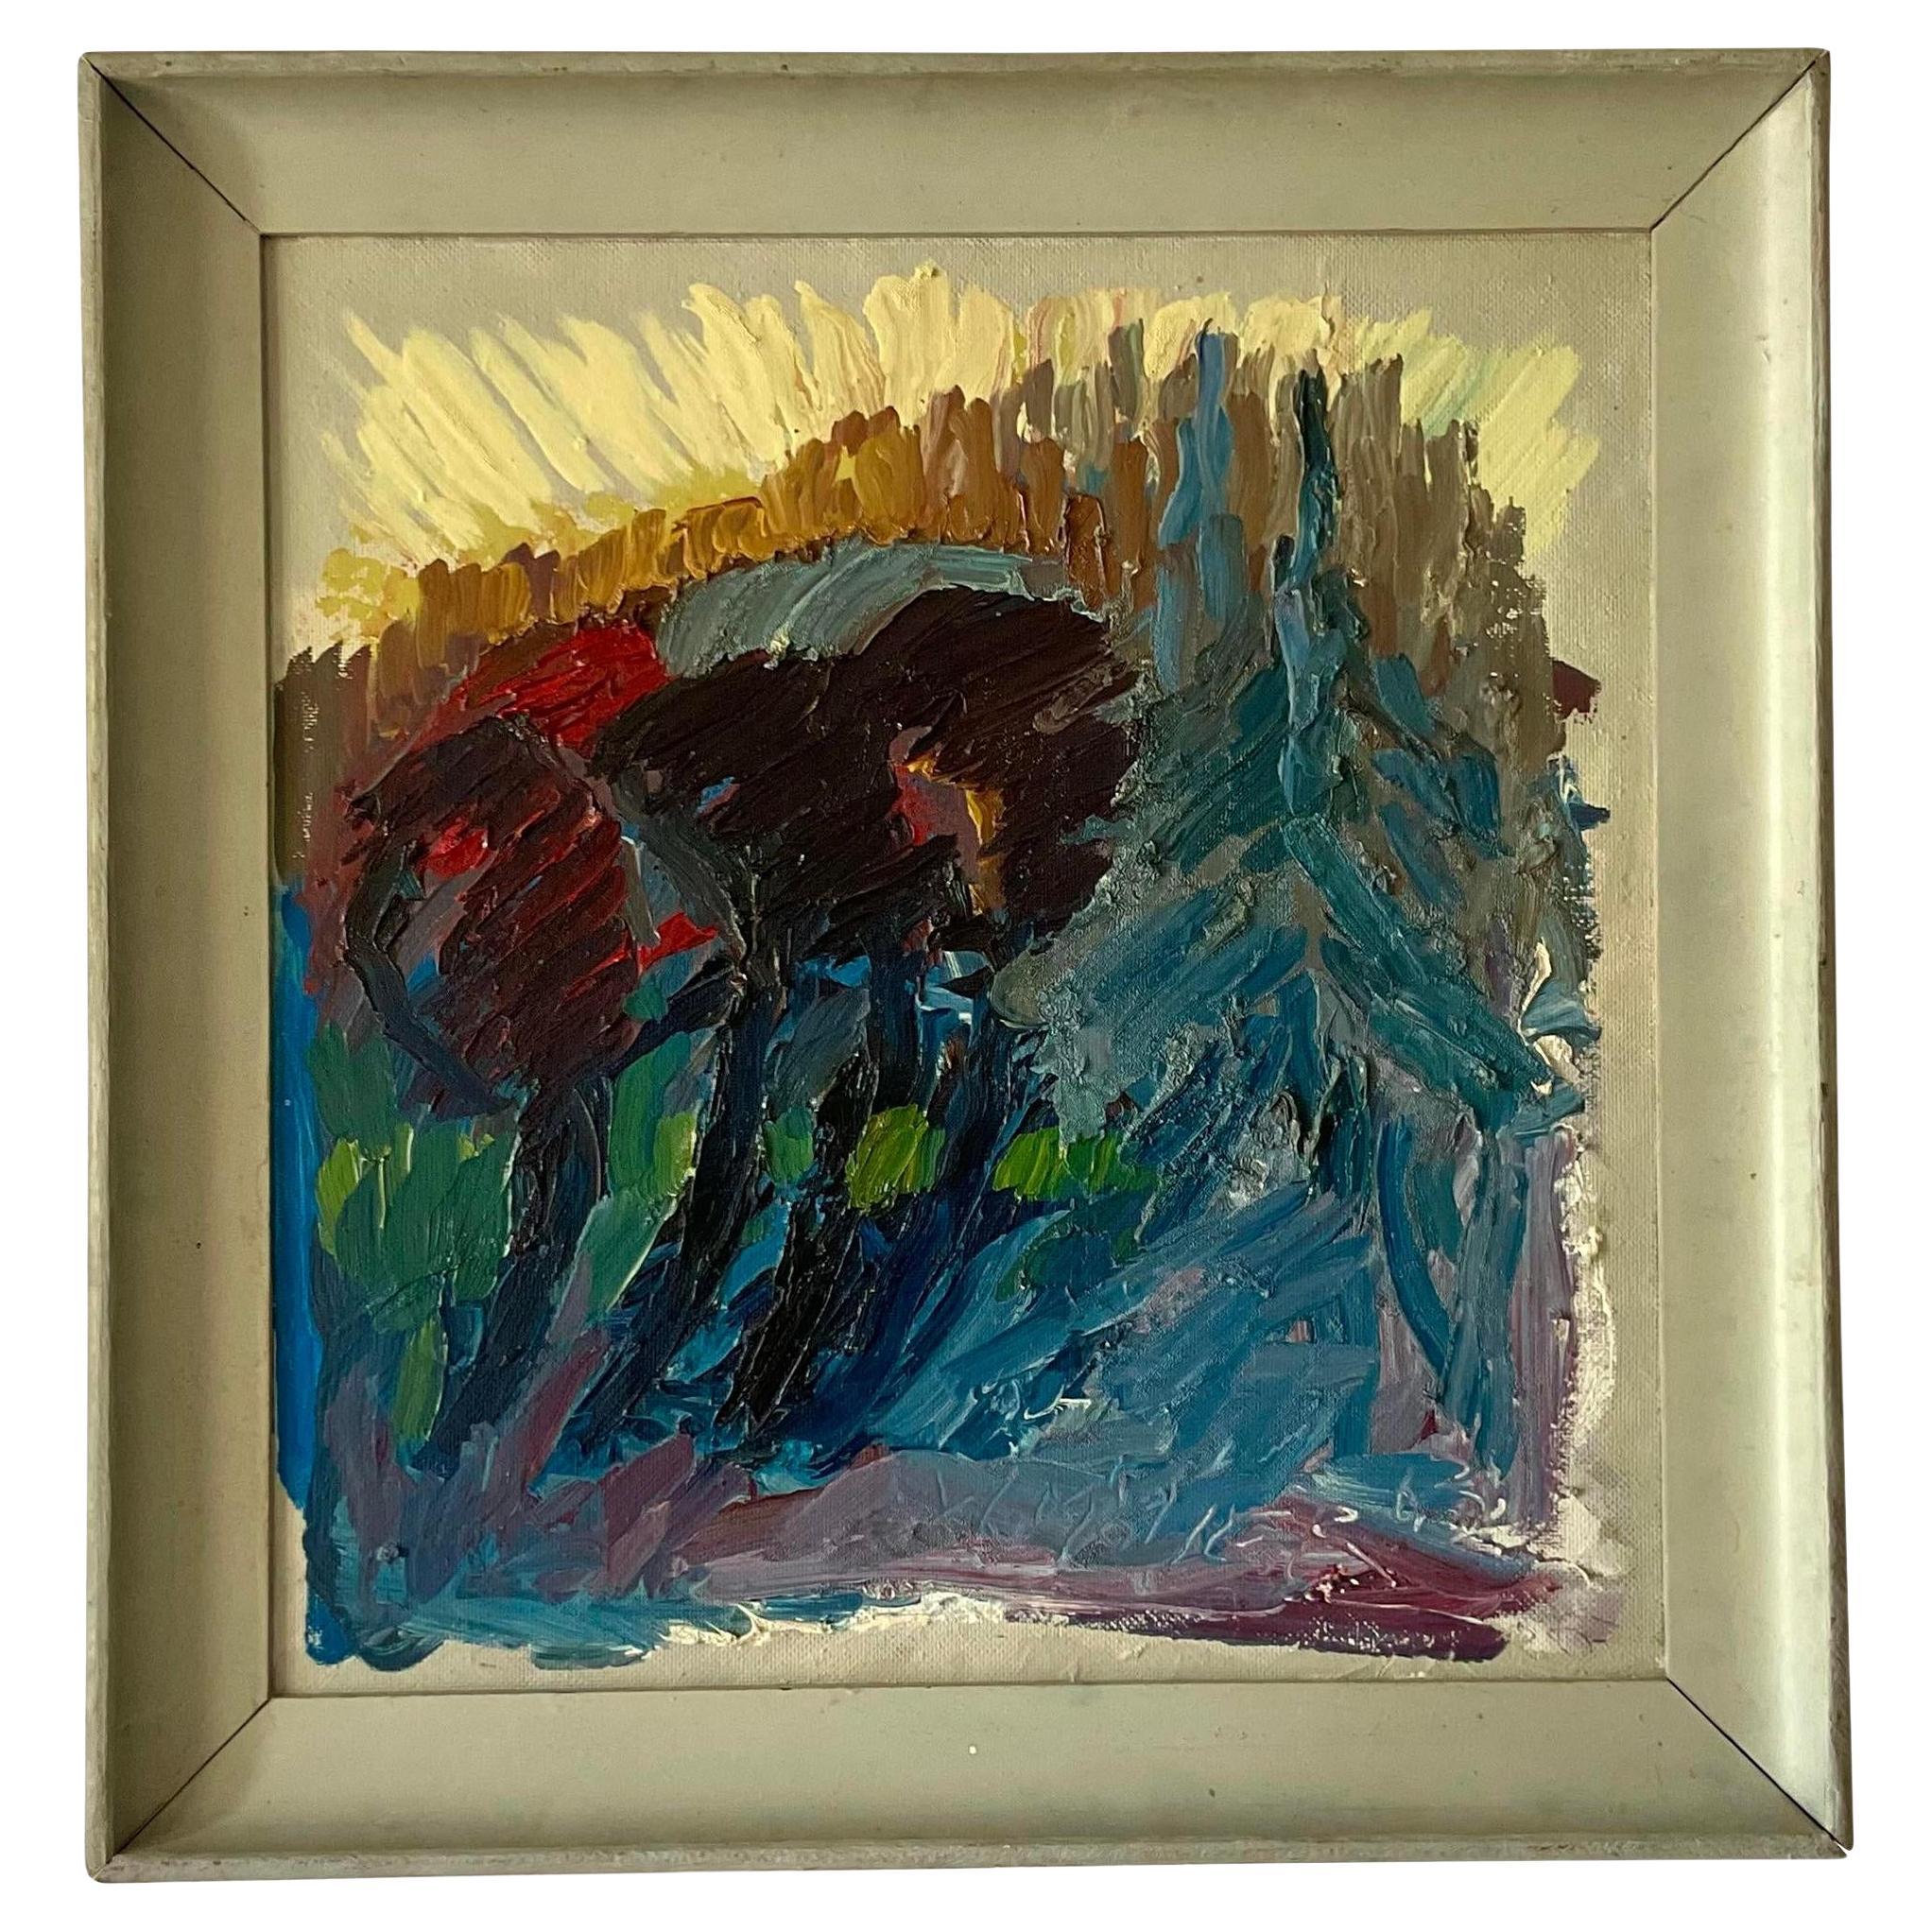 Huile sur toile originale de Boho, expressionniste abstrait signée, 1963